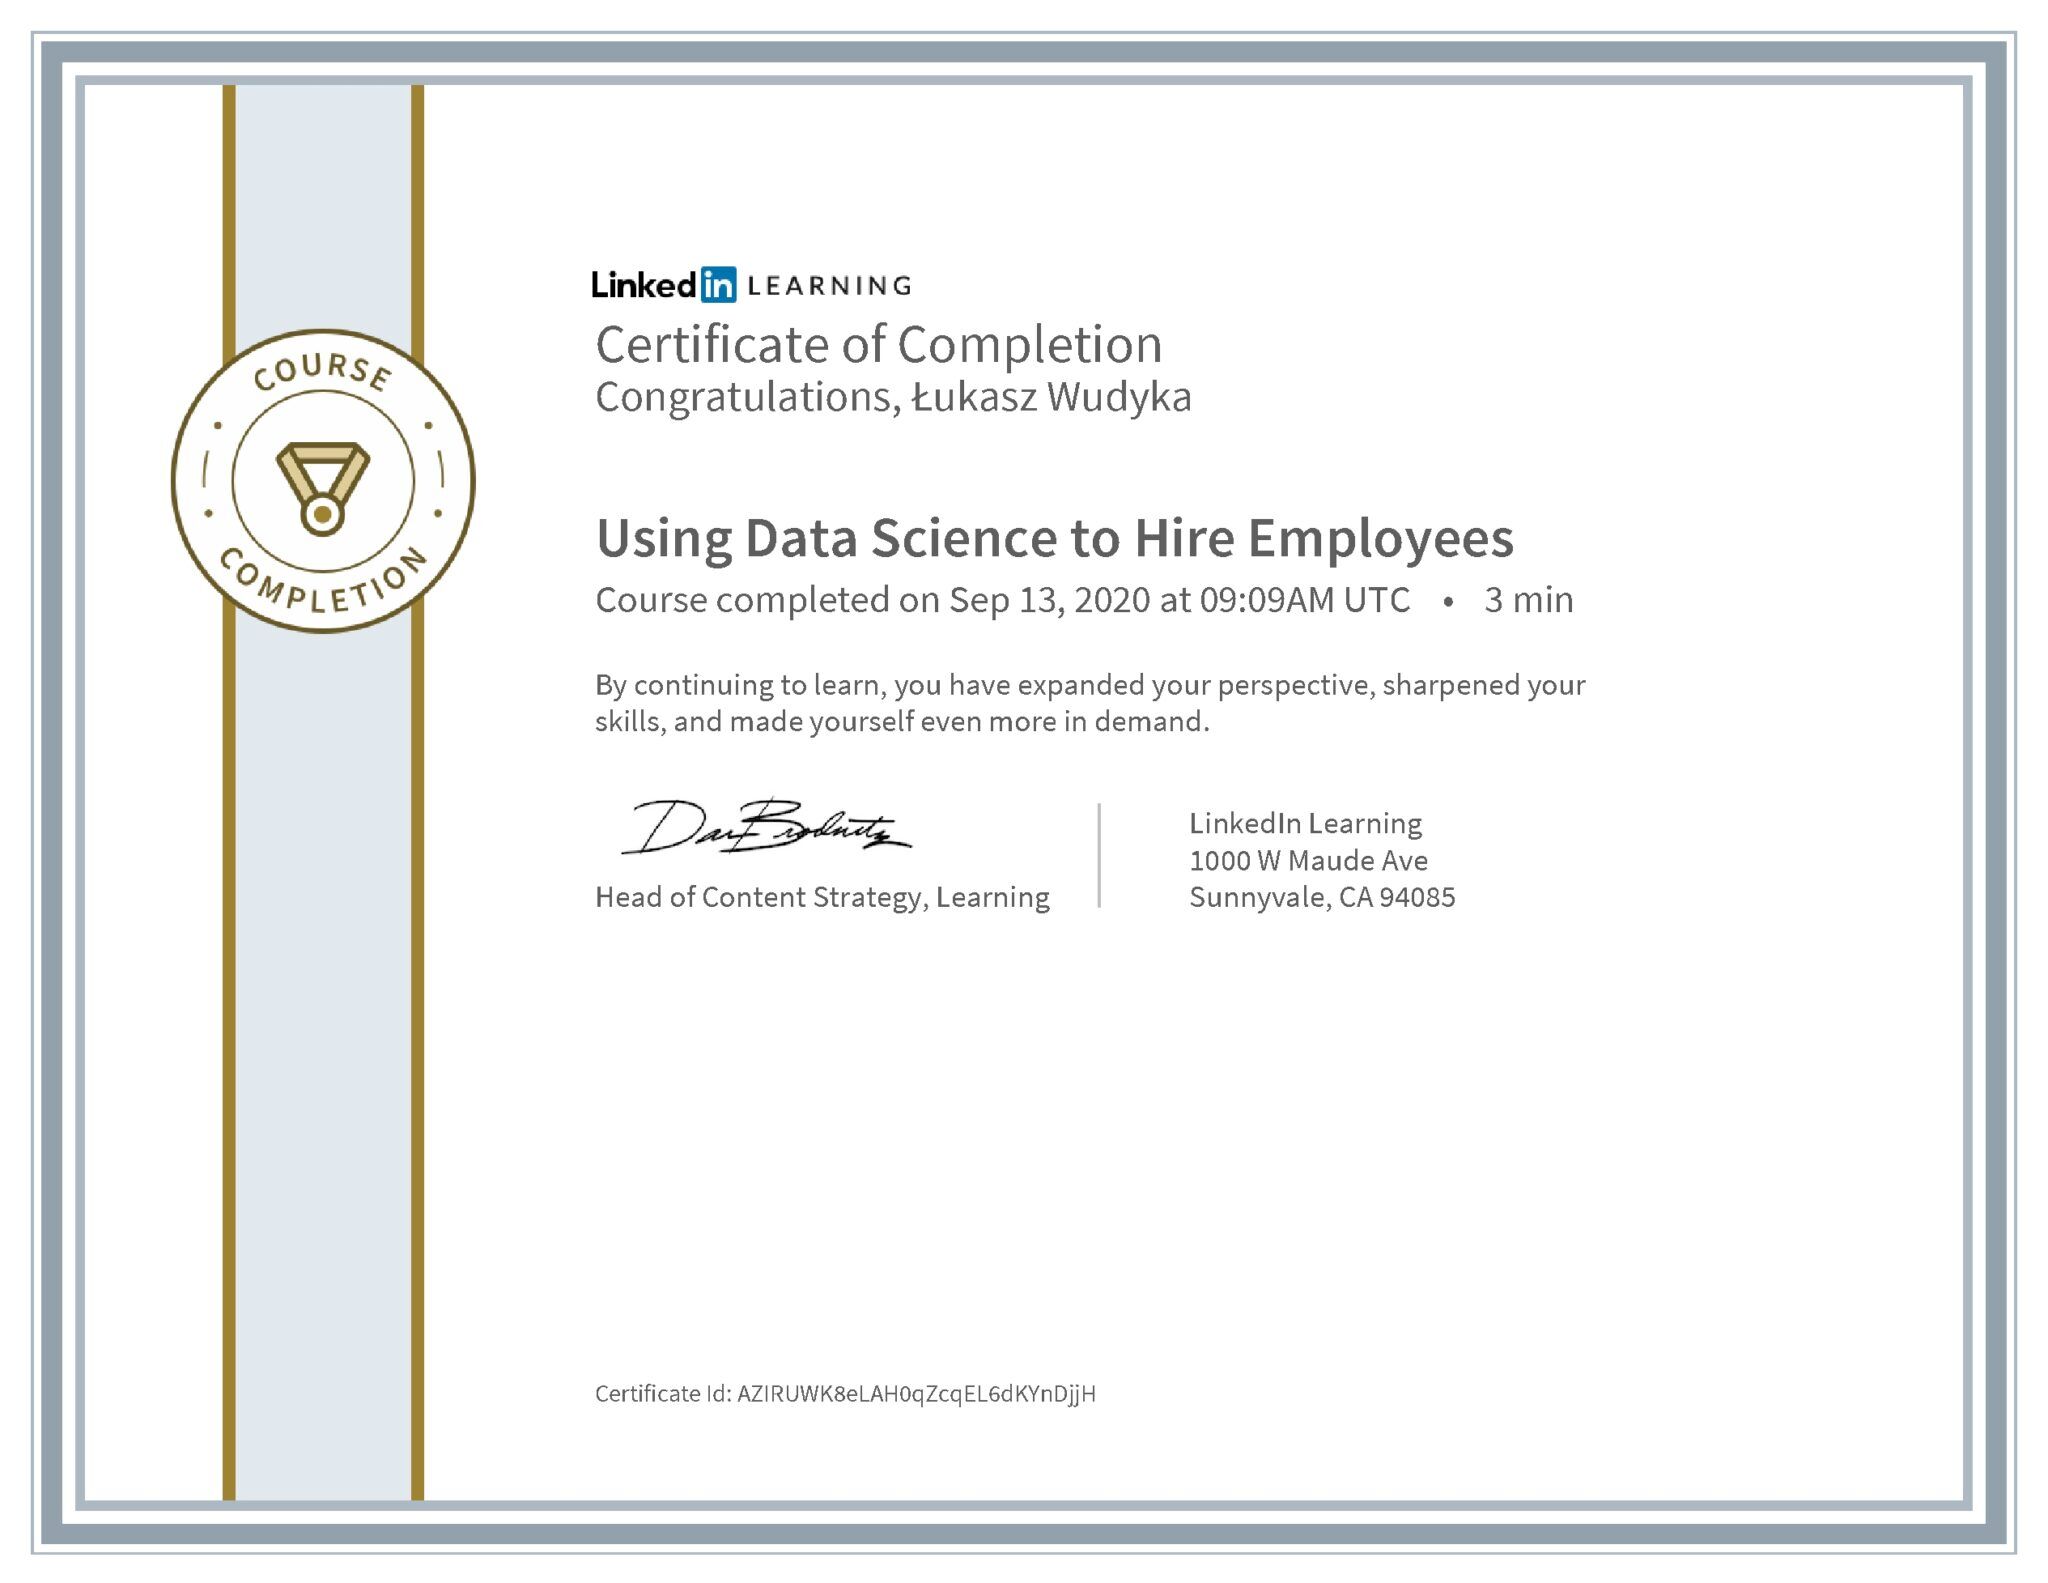 Łukasz Wudyka certyfikat LinkedIn Using Data Science to Hire Employees